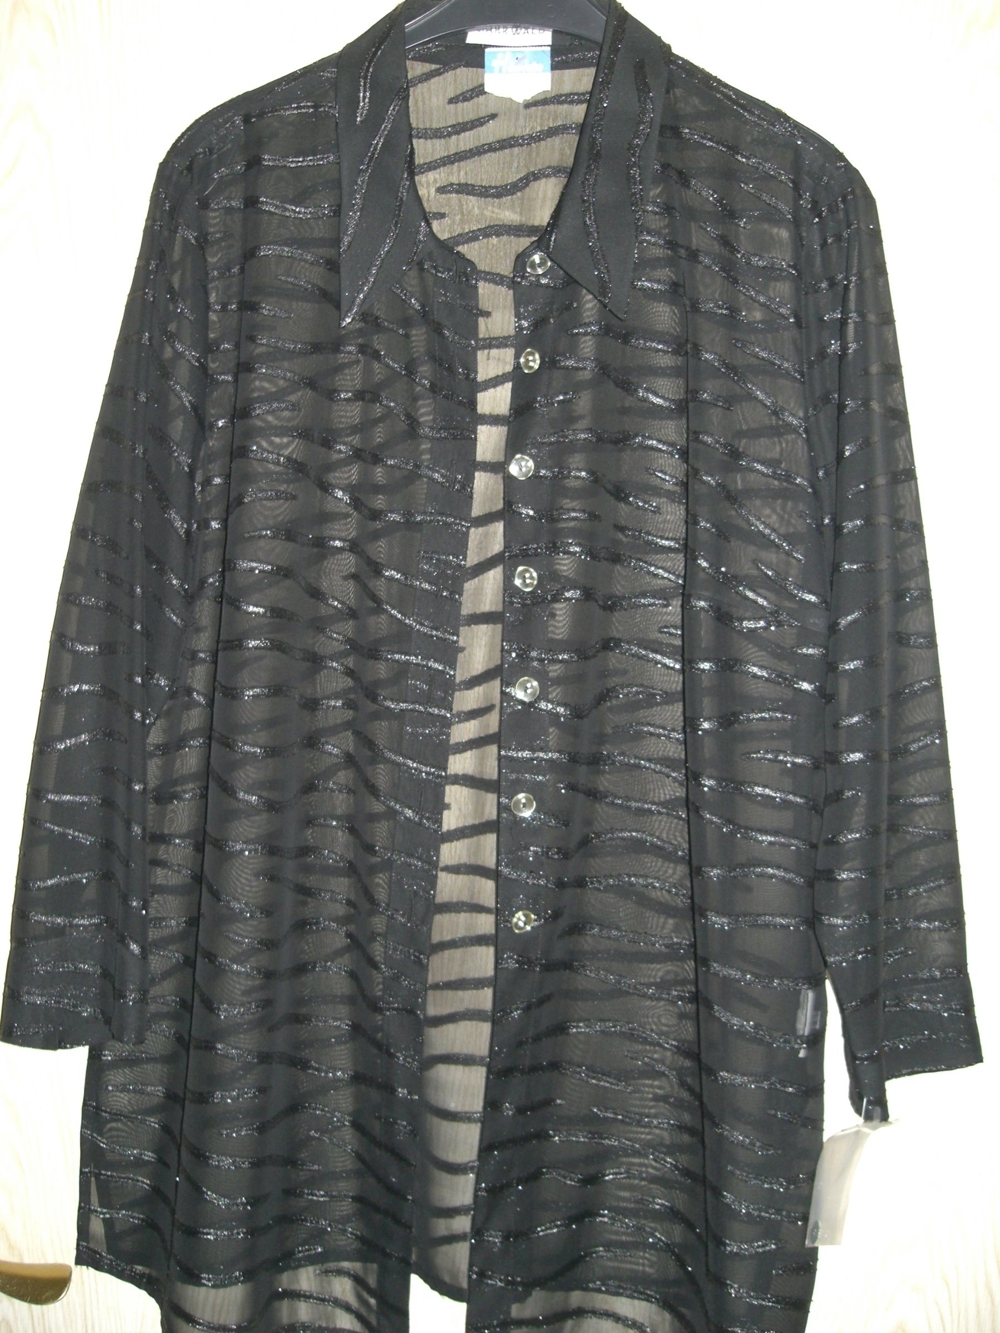 schwarze, neue, exklusive, transparente Bluse Gr. 50